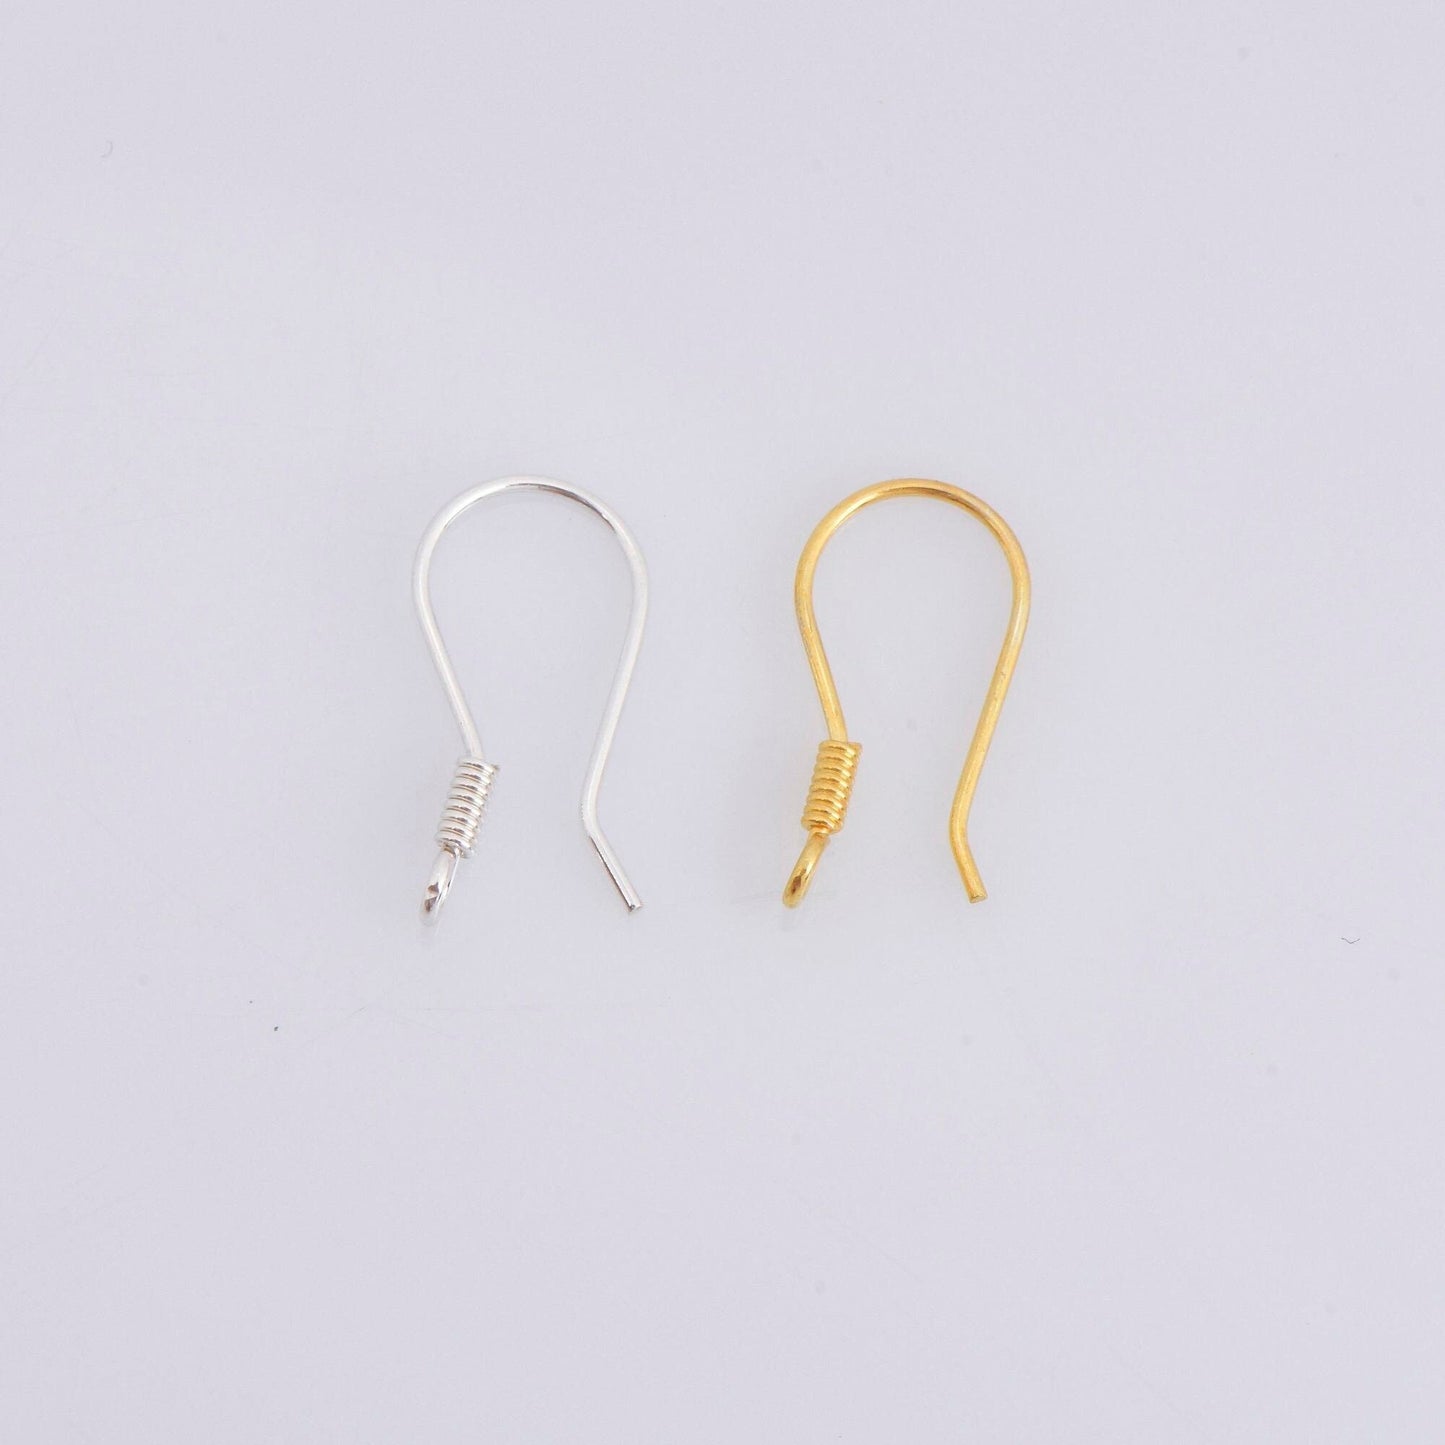 24K Gold Vermeil Ear Wires, 925 Solid Silver Earring Hooks in 24K Gold, Fancy Ear Wires, Earrings Making Supply, Jewelry Findings, M37/VM37